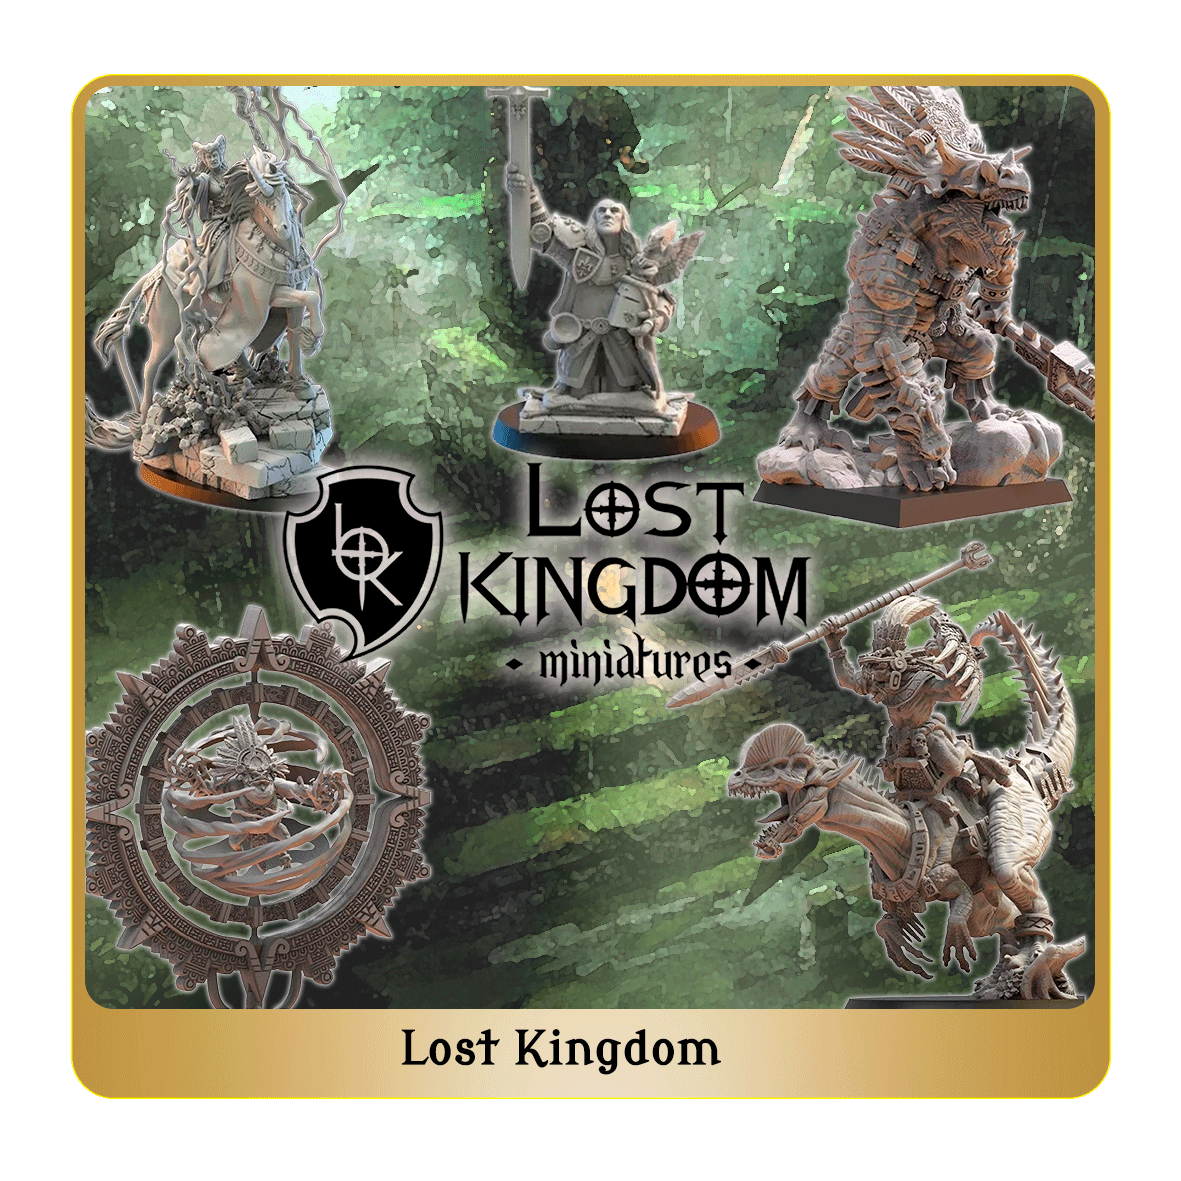 Figurines The lost kingdom miniatures